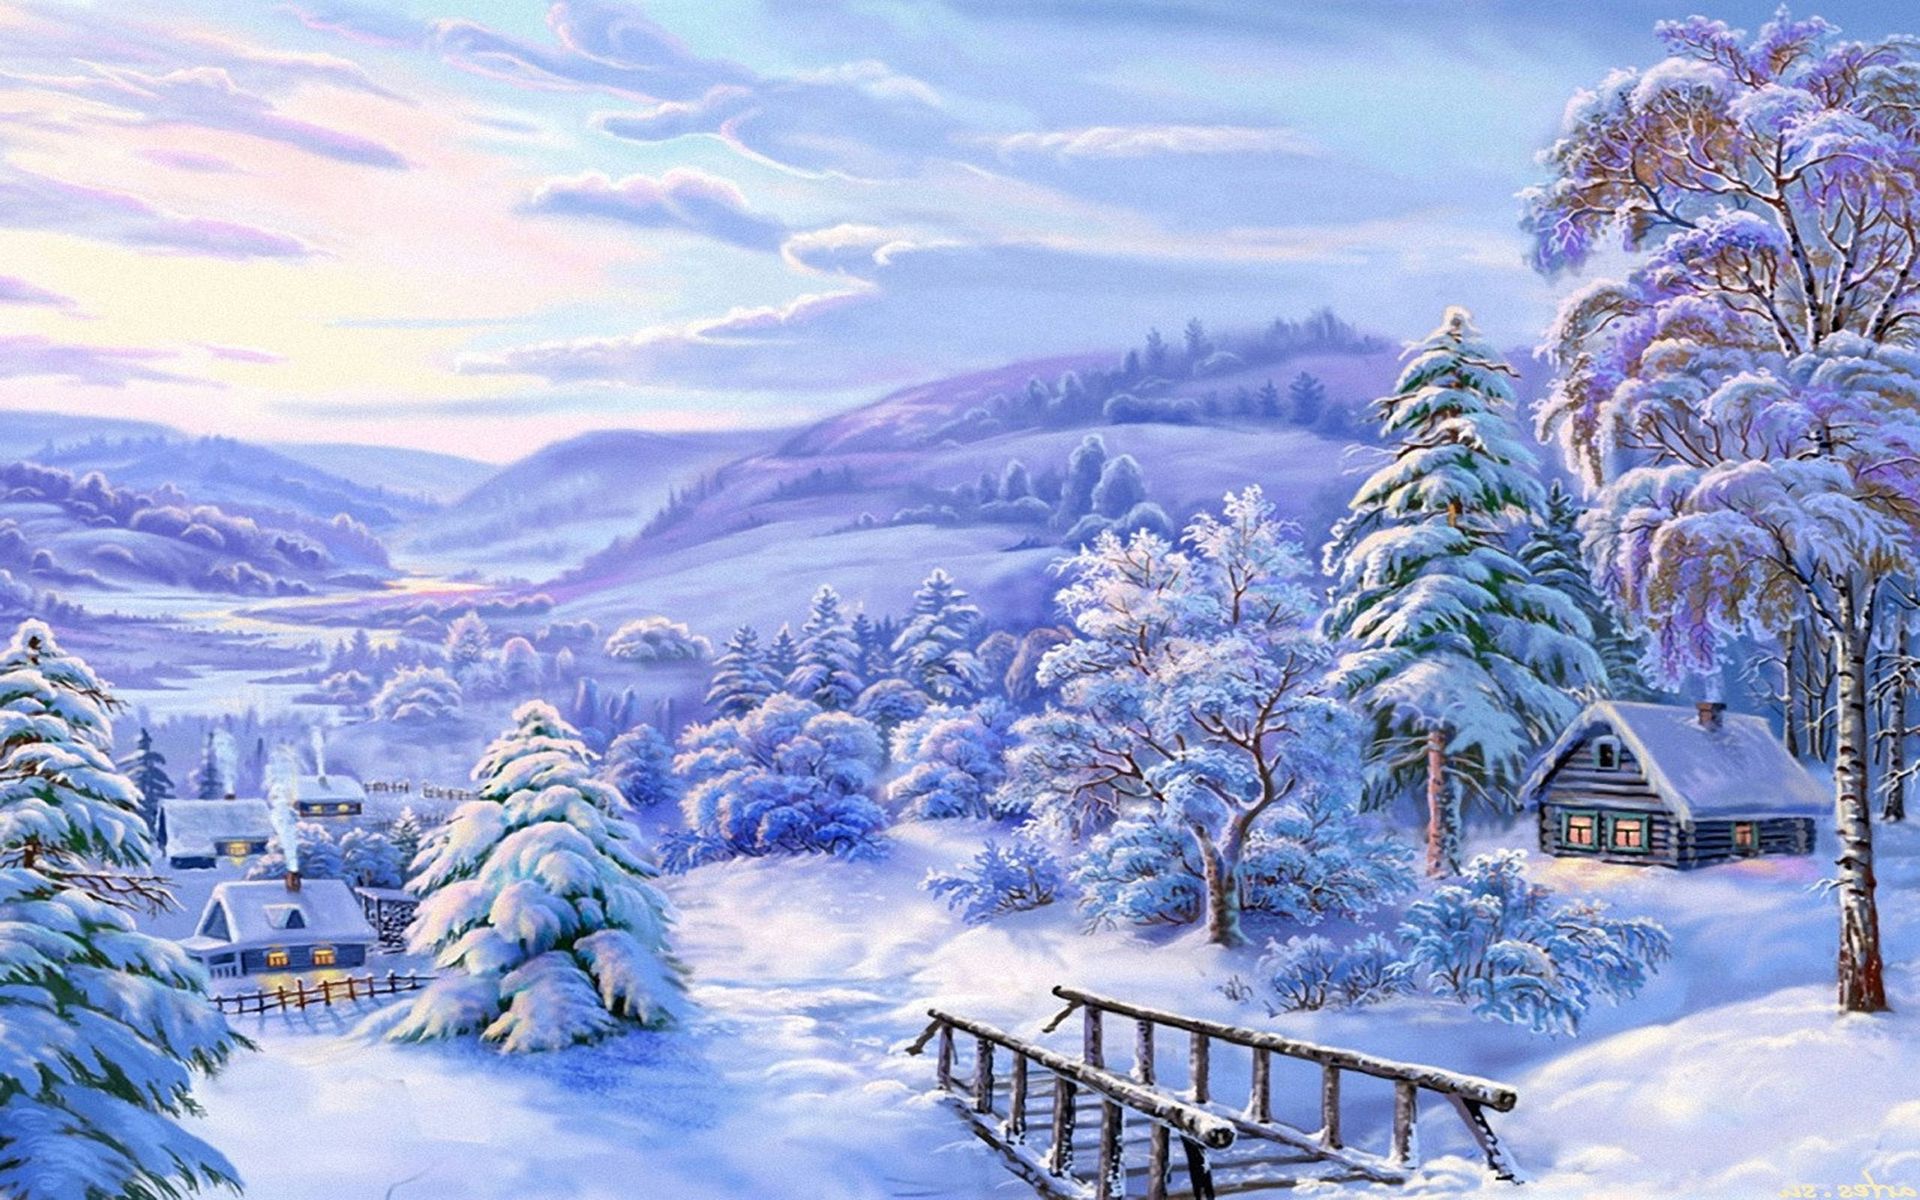 Скачать обои бесплатно Зима, Снег, Дерево, Дом, Ландшафт, Художественные картинка на рабочий стол ПК